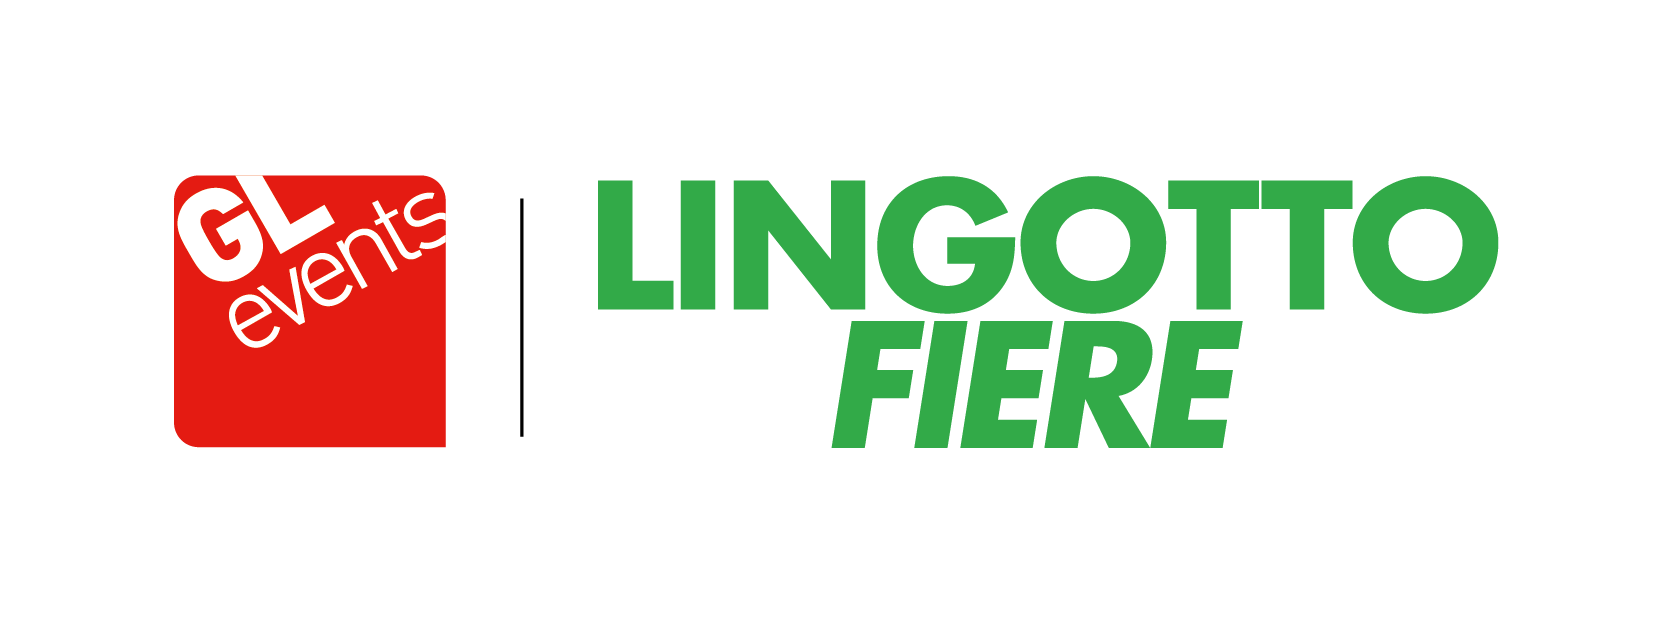 GL events Italia - Lingotto Fiere 